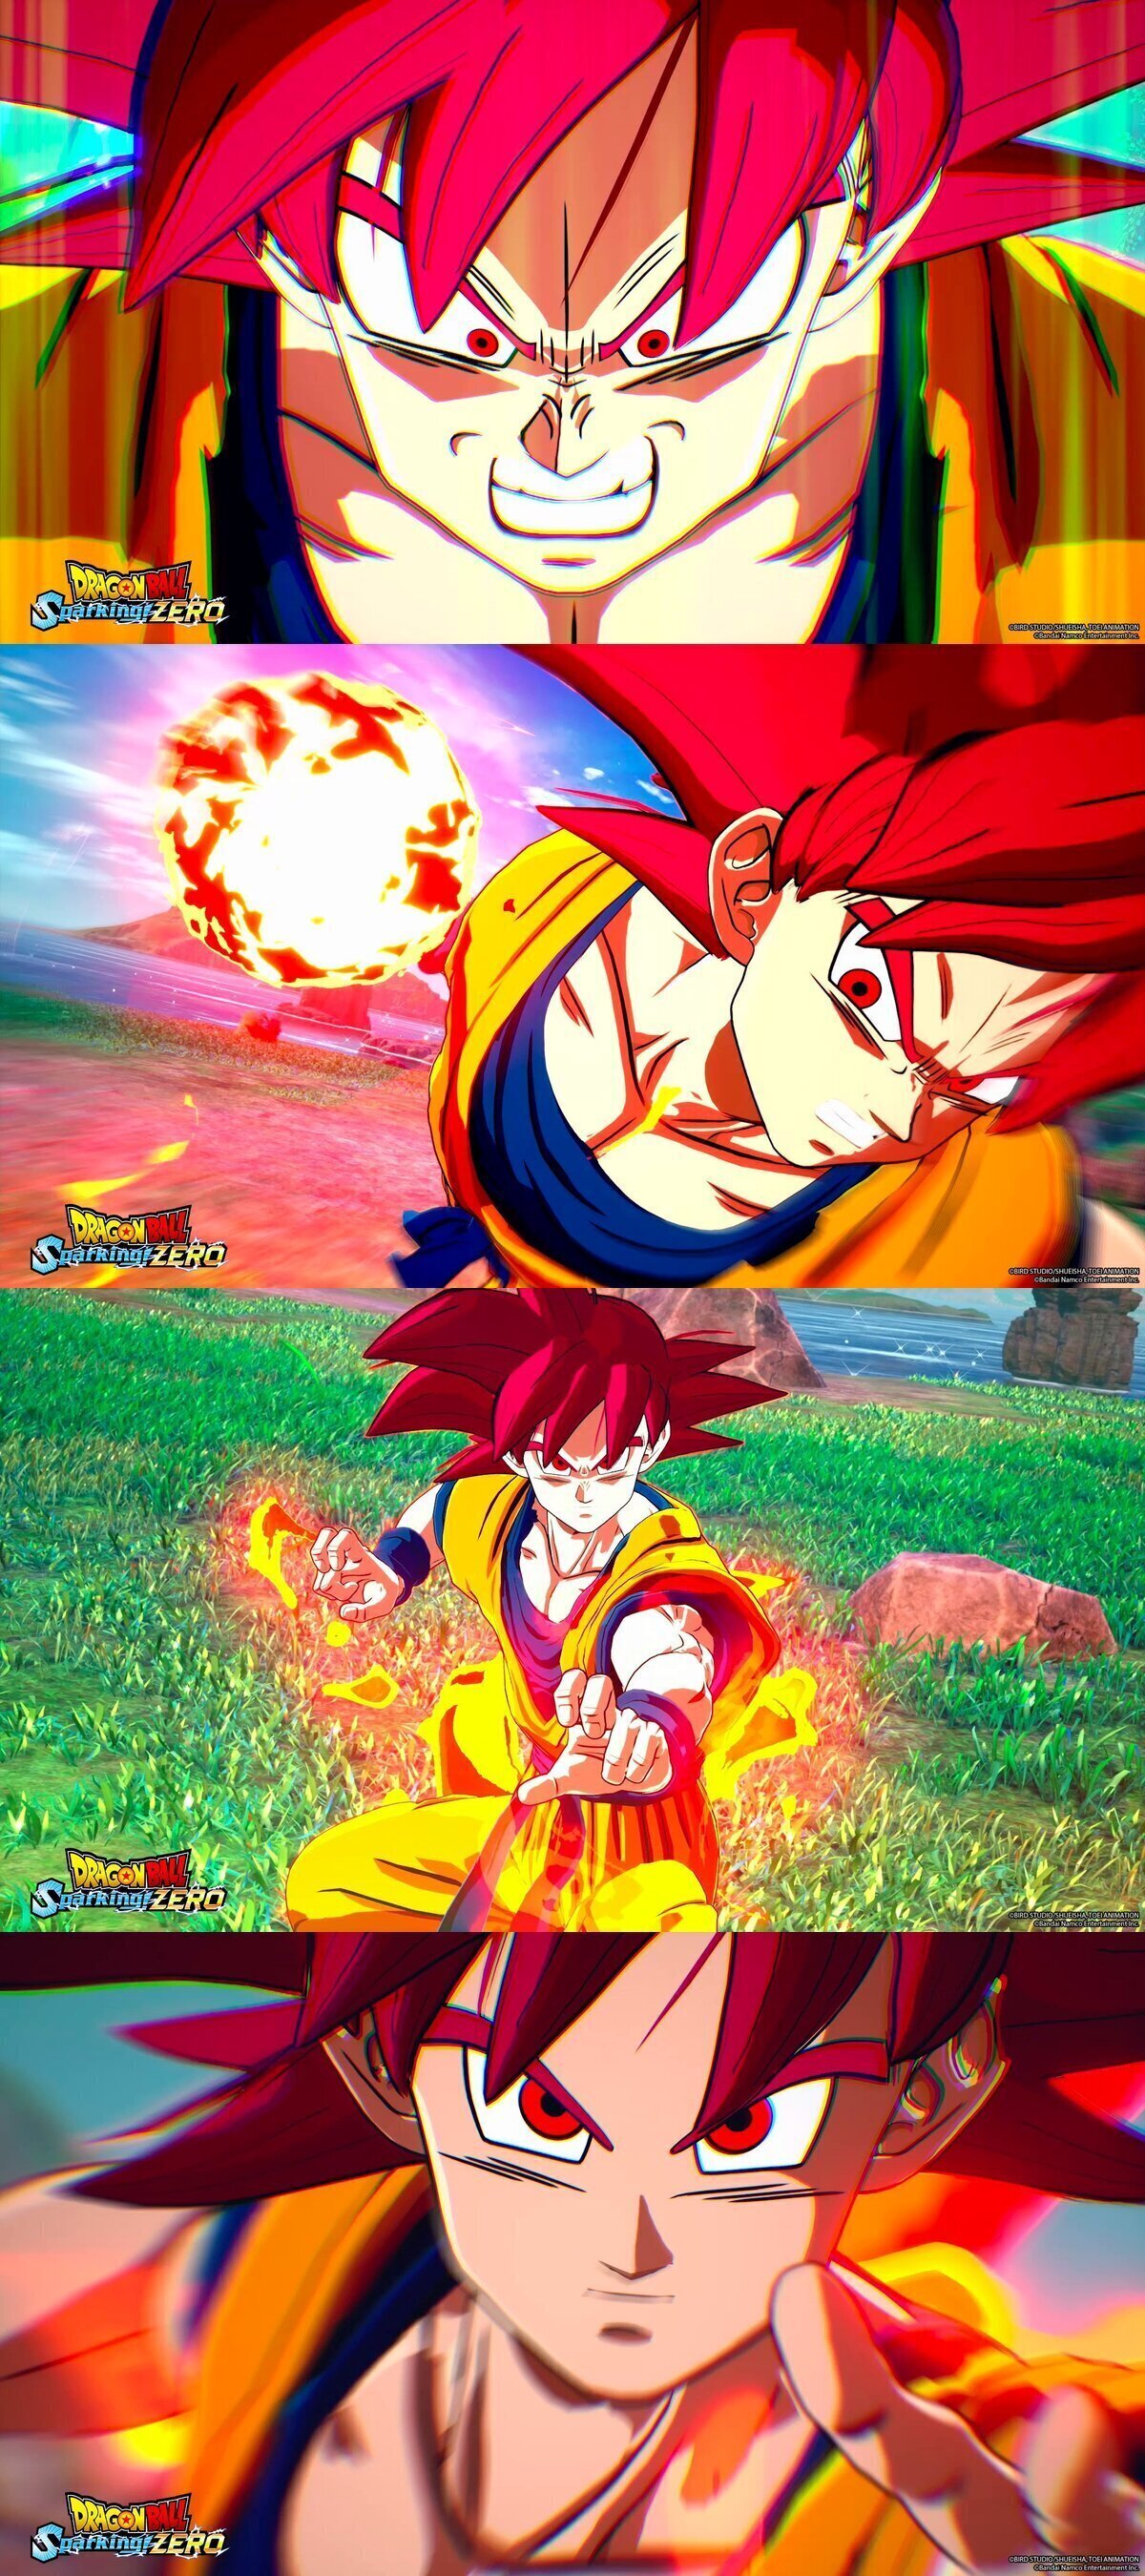 Nuevas imágenes oficiales de Goku Super Saiyan God en Dragon Ball Sparking Zero